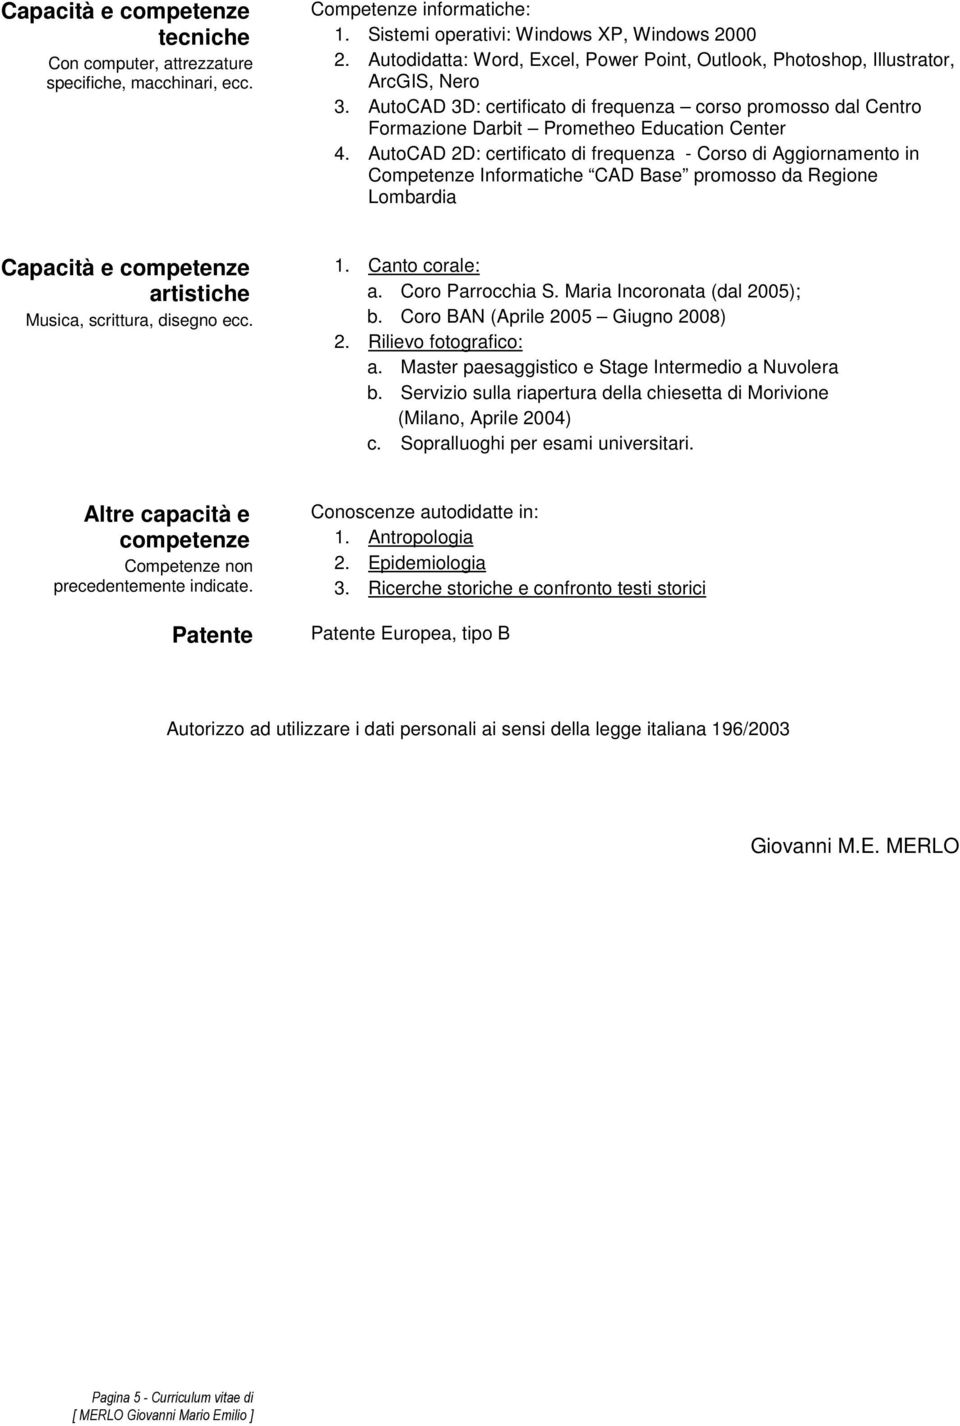 AutoCAD 2D: certificato di frequenza - Corso di Aggiornamento in Competenze Informatiche CAD Base promosso da Regione Lombardia artistiche Musica, scrittura, disegno ecc. 1. Canto corale: a.